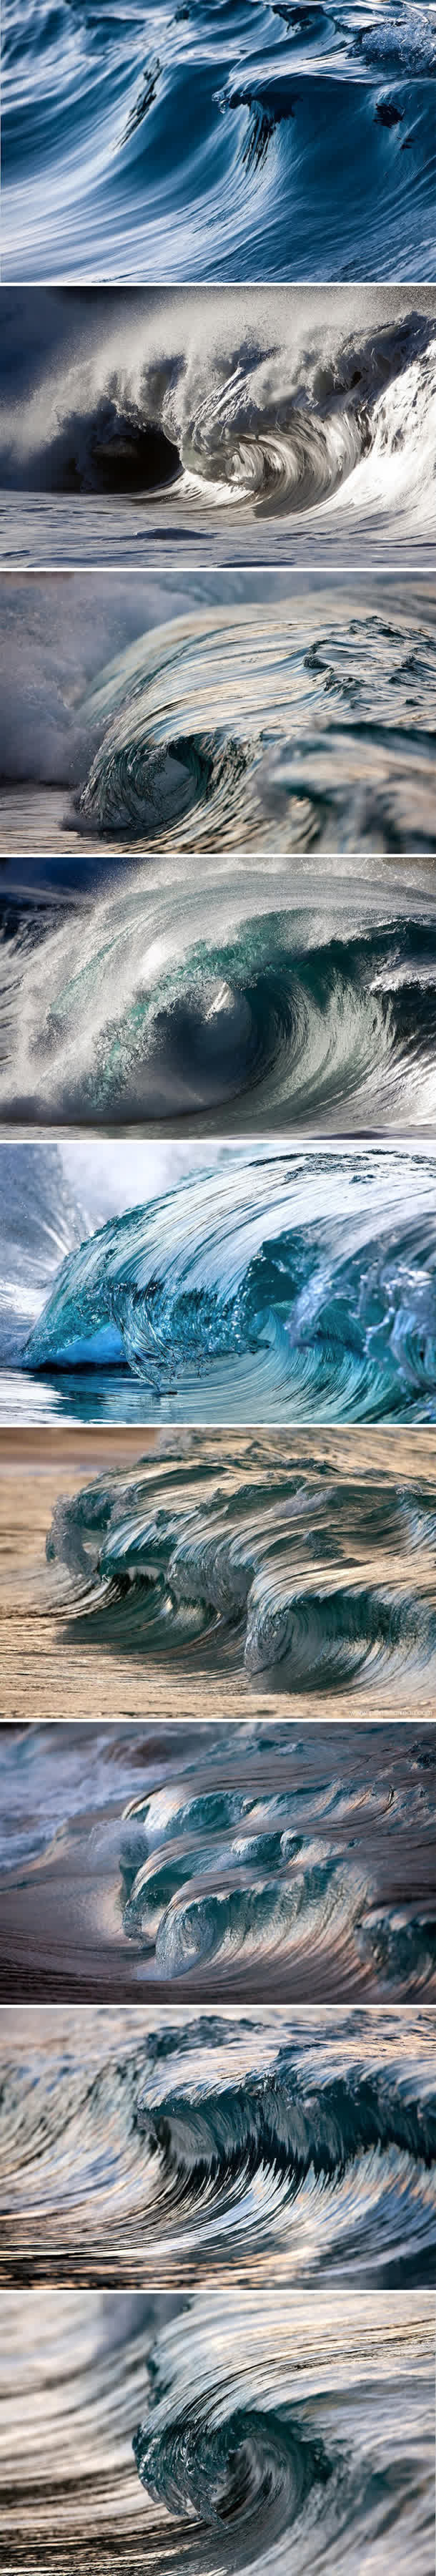 海啸唯美摄影技术